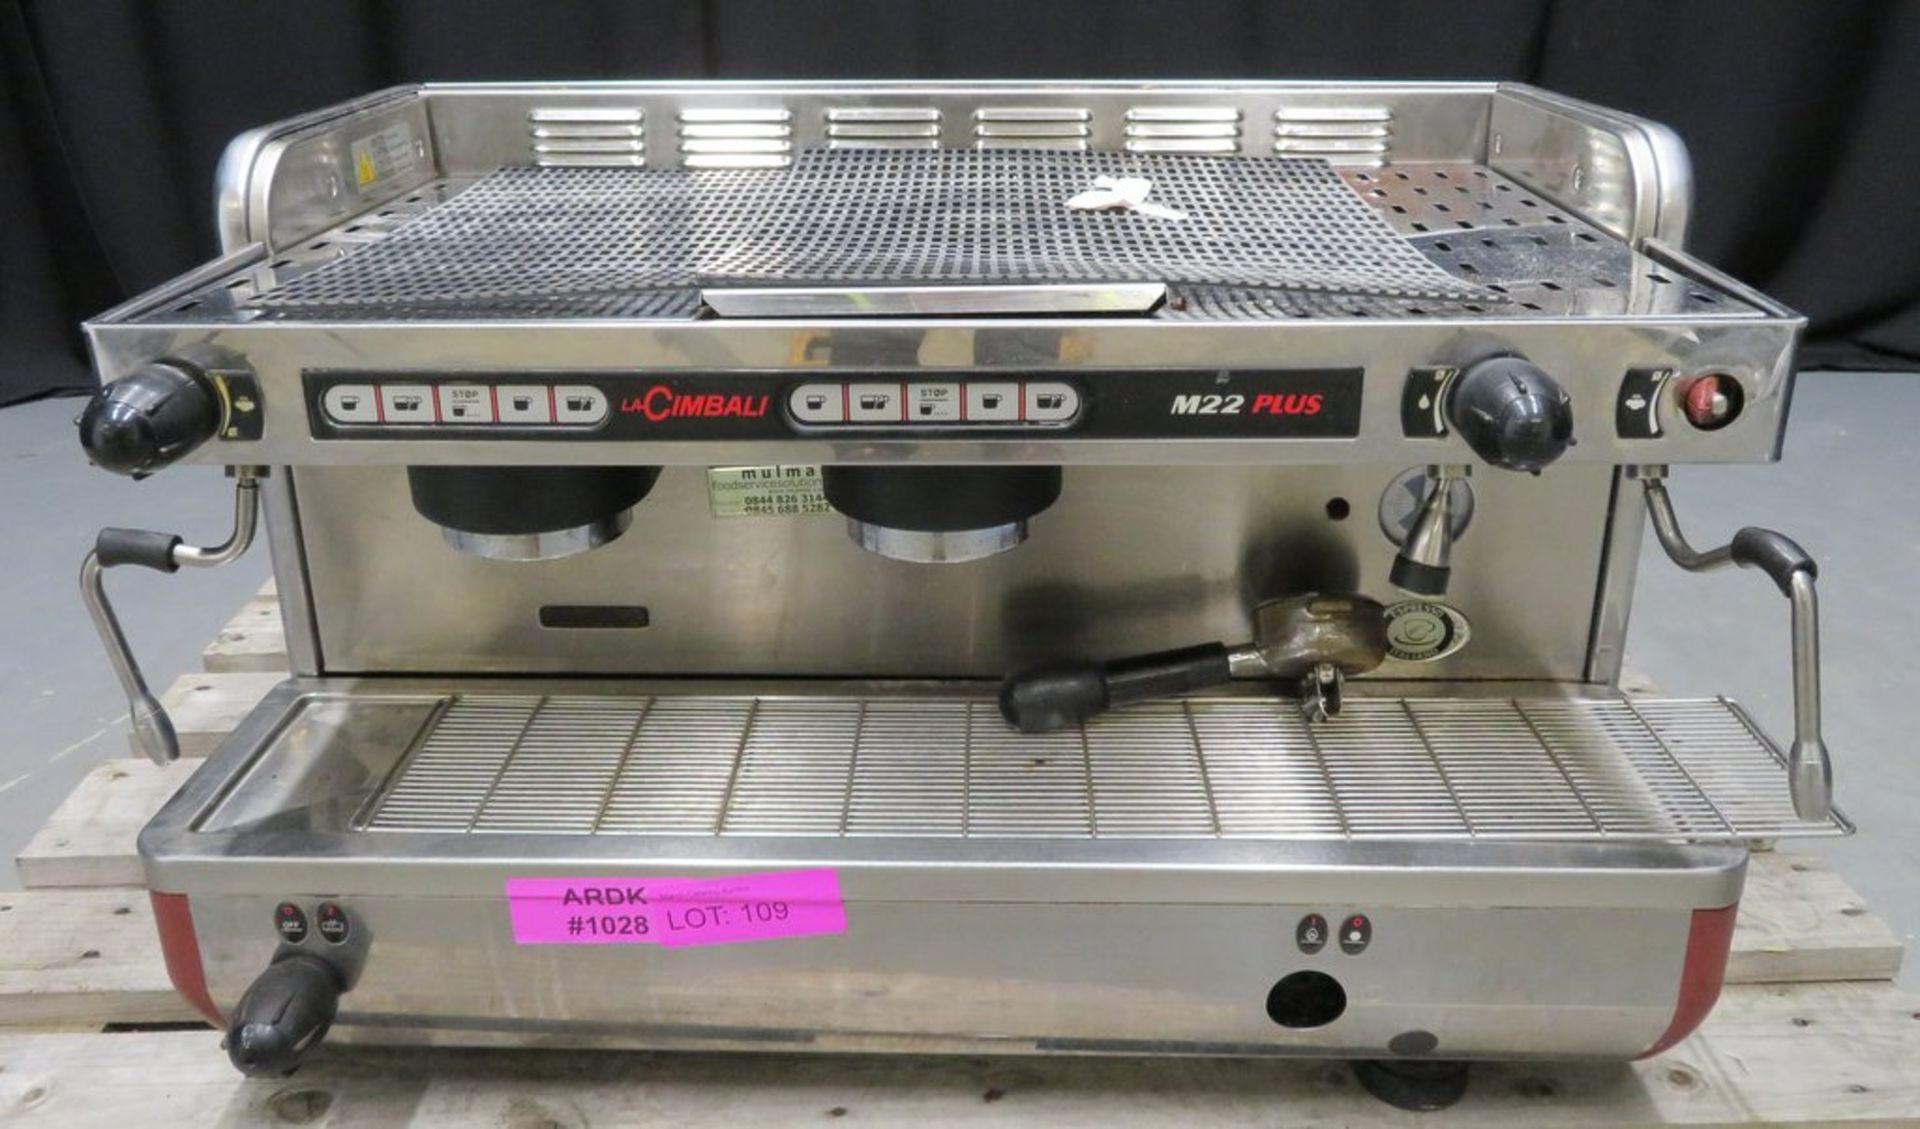 La Cimbali Espresso Italiano coffee machine, 1 phase electric